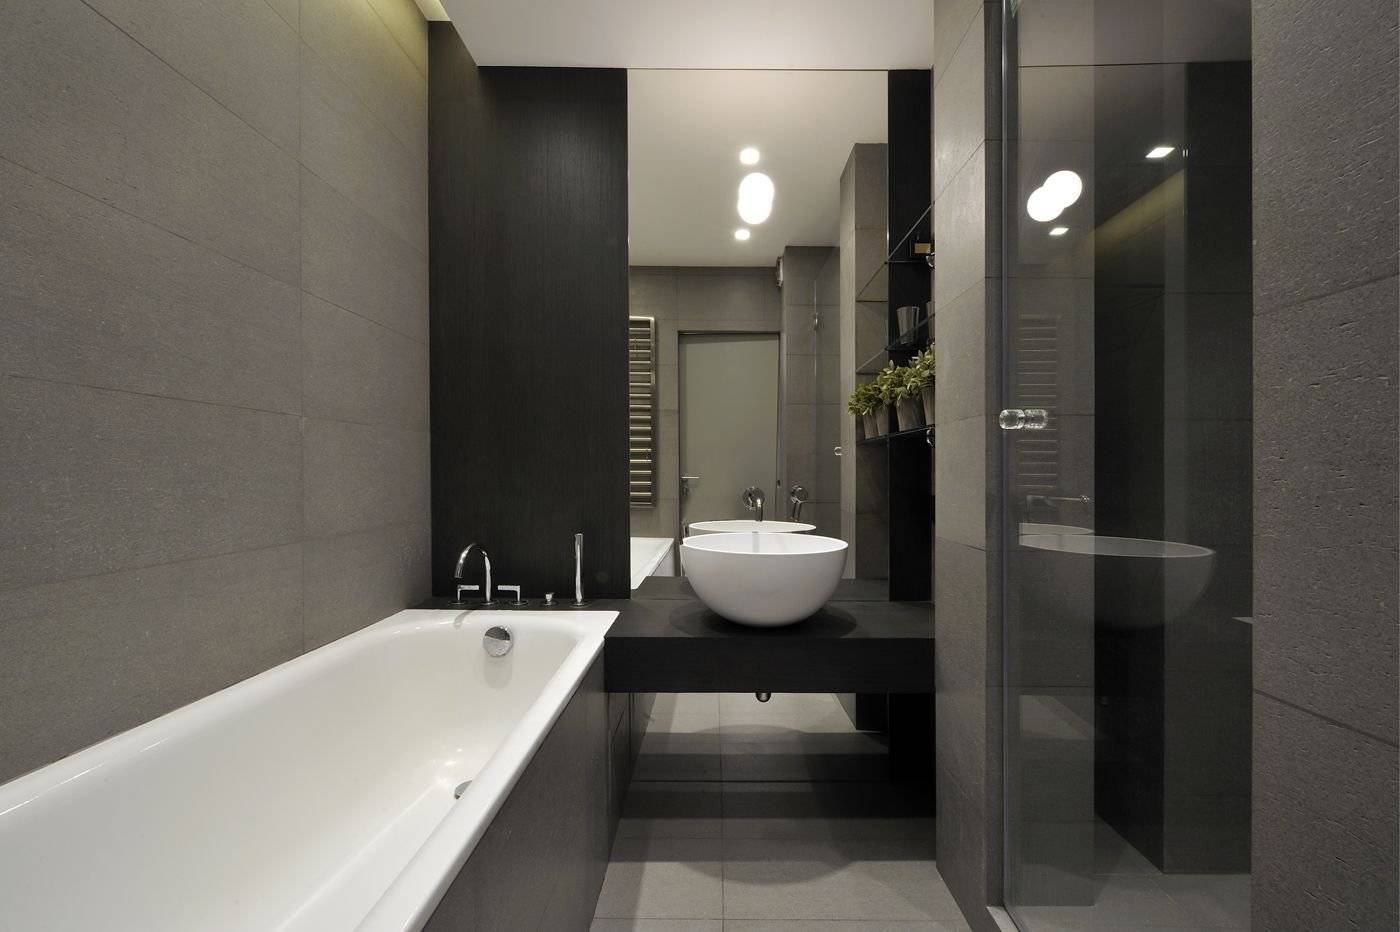 Ванная комната в стиле минимализм (90 фото): дизайн интерьера, идеи для ремонта